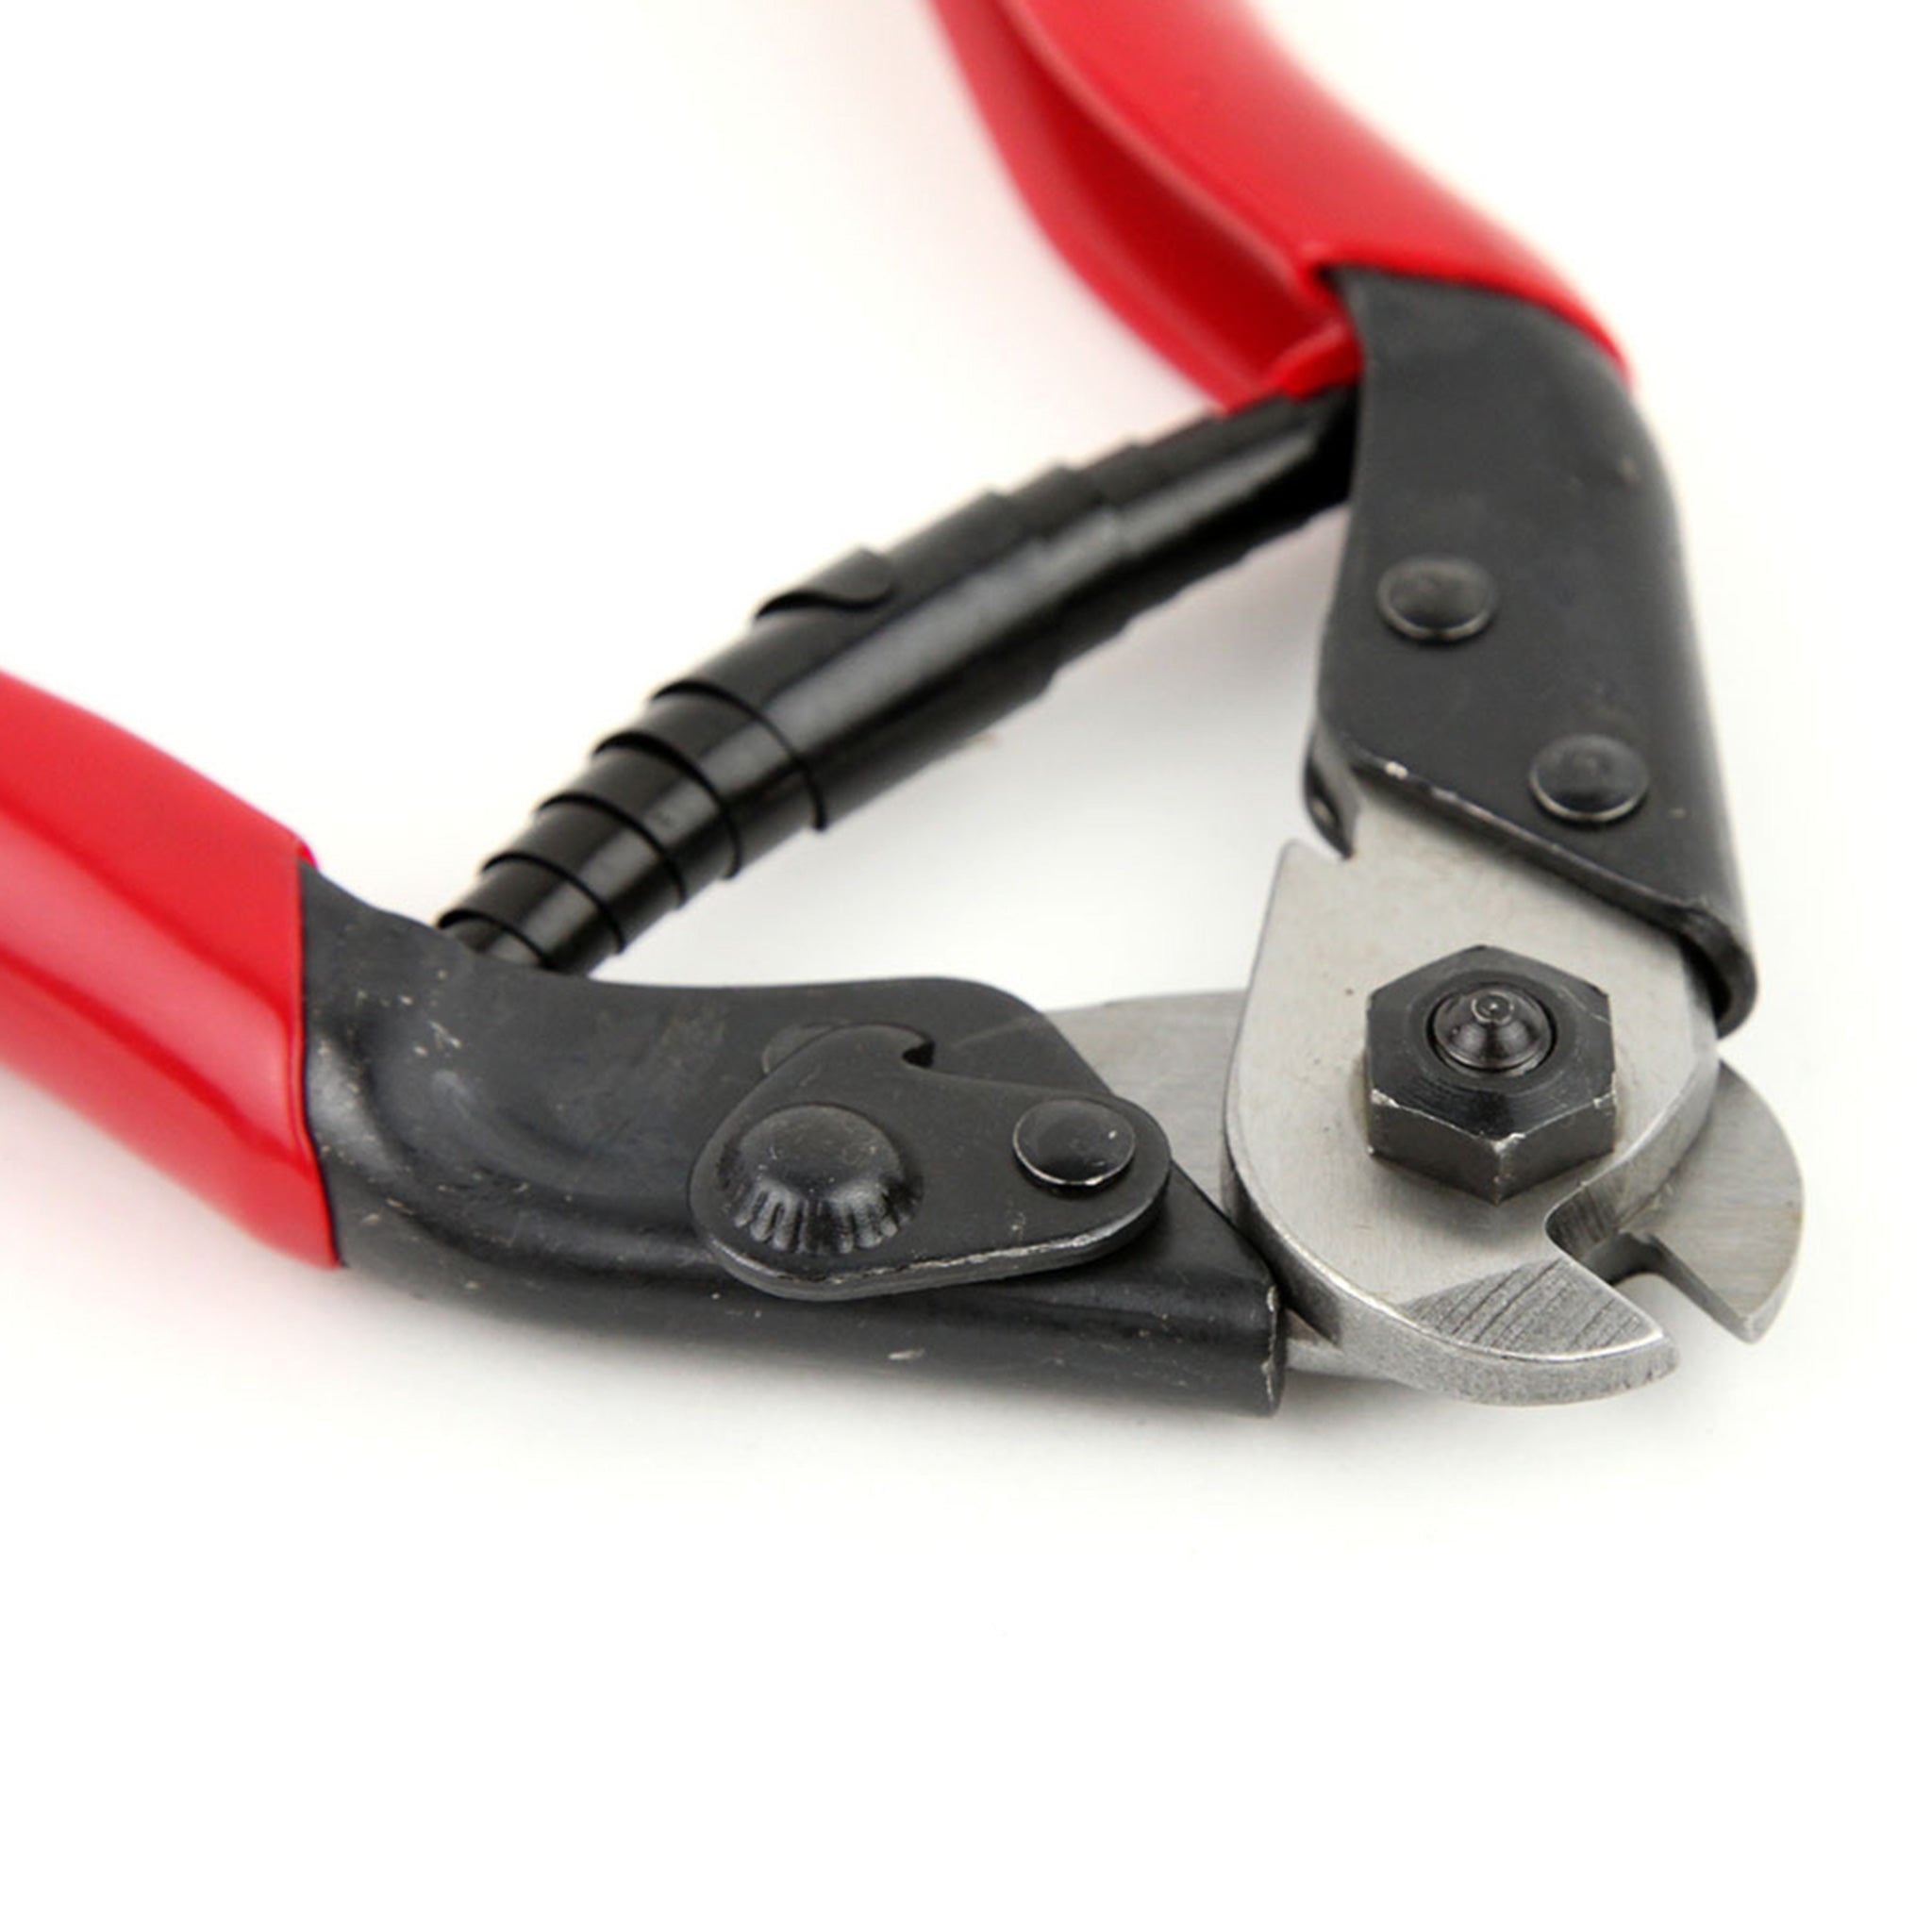 Pince coupe cable et fils jusqu\'à 16 mm² - 39,60€